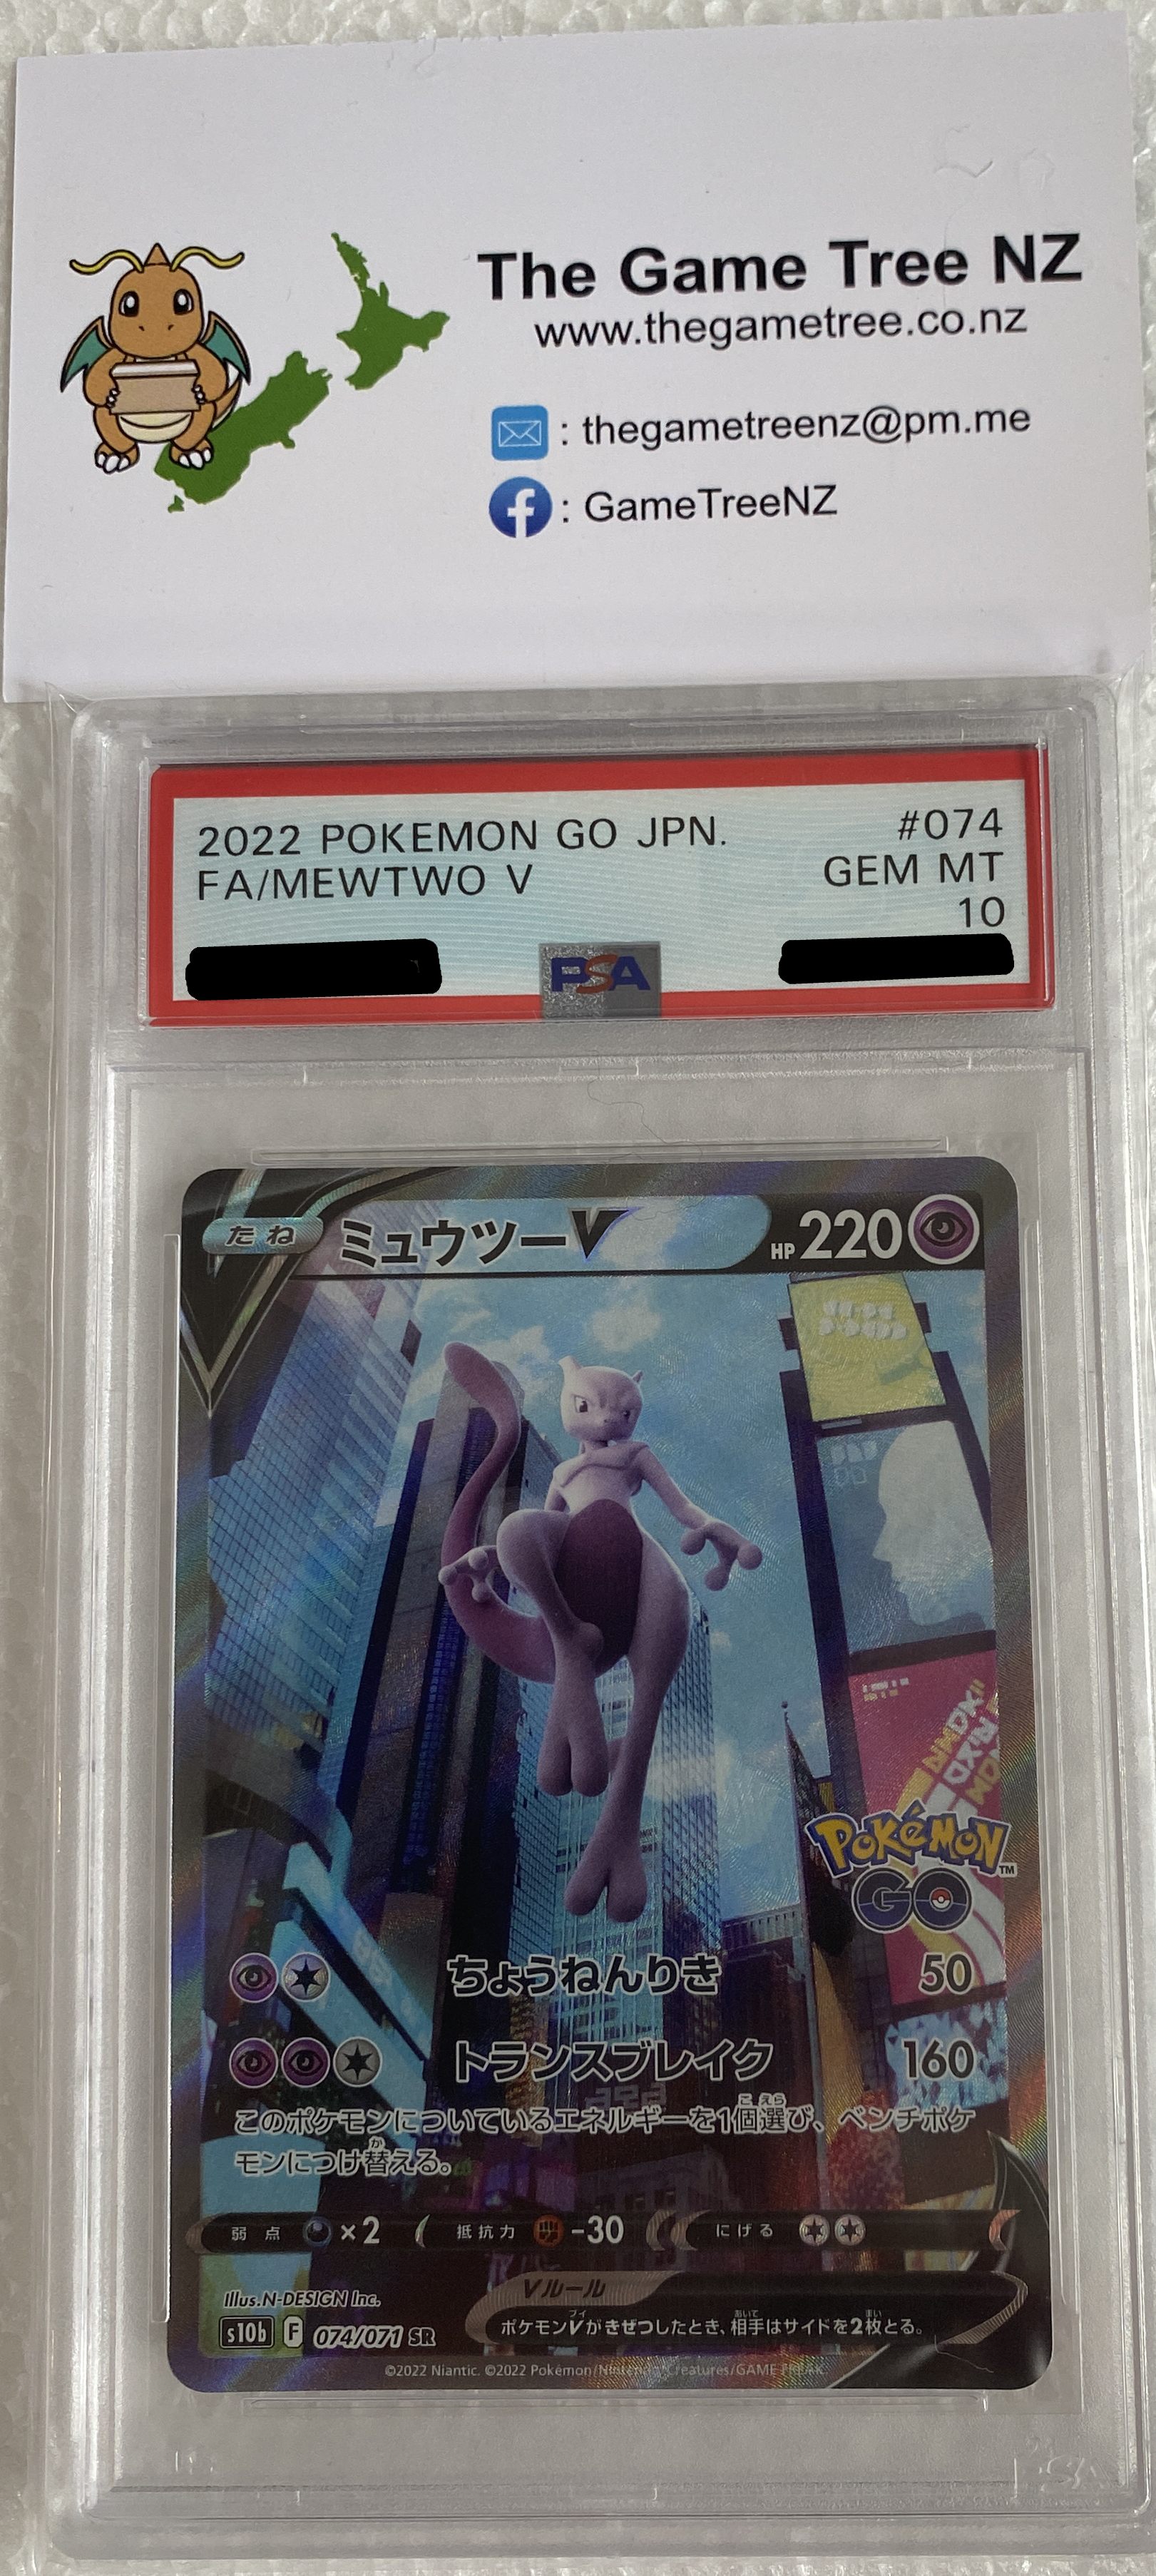 PSA 10 Gem Mint Mewtwo V 73/71 Pokemon Go Japanese Card